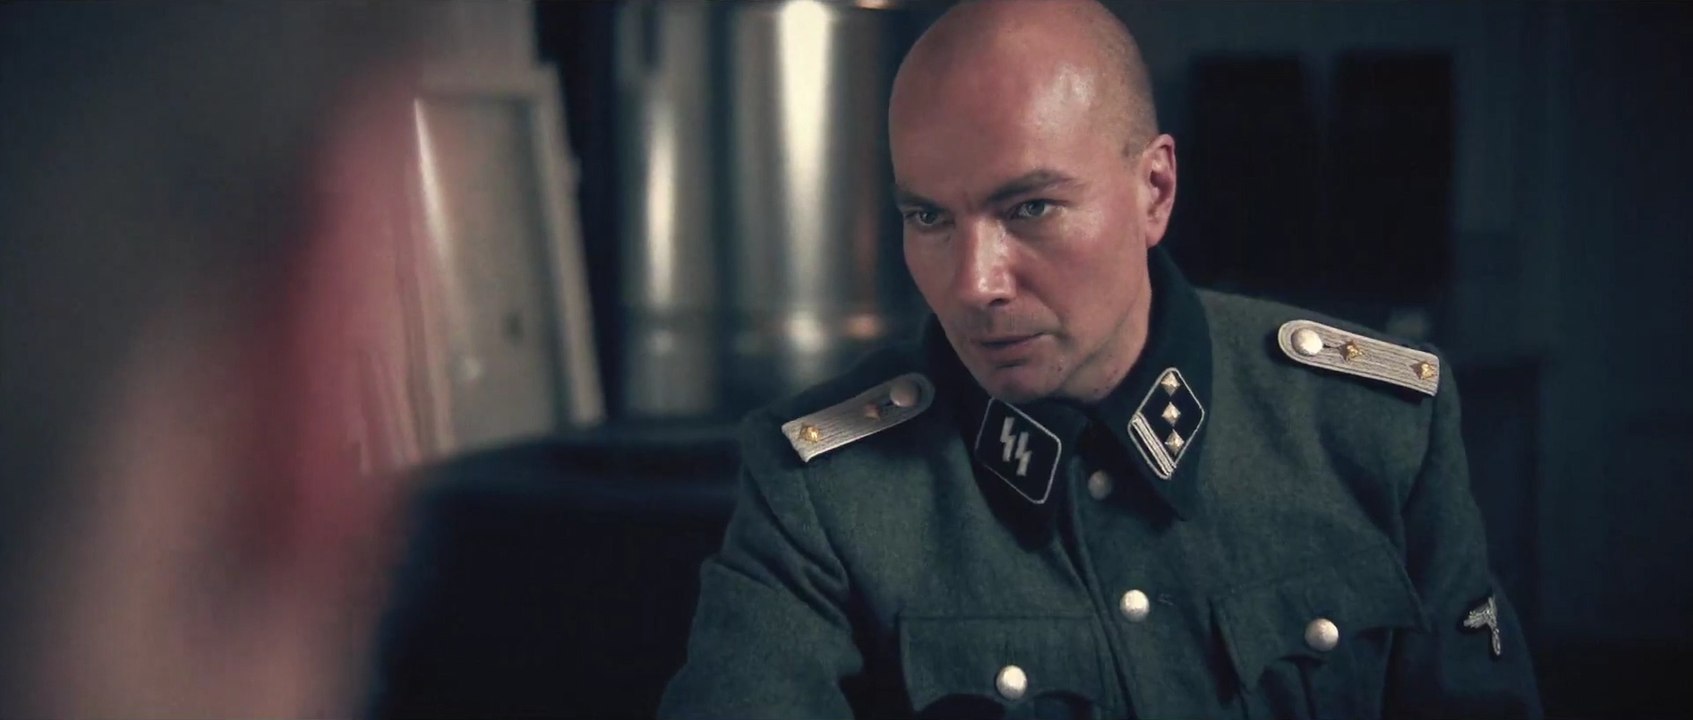 Operation Chalice: In tödlicher Mission - Trailer (Deutsch) HD